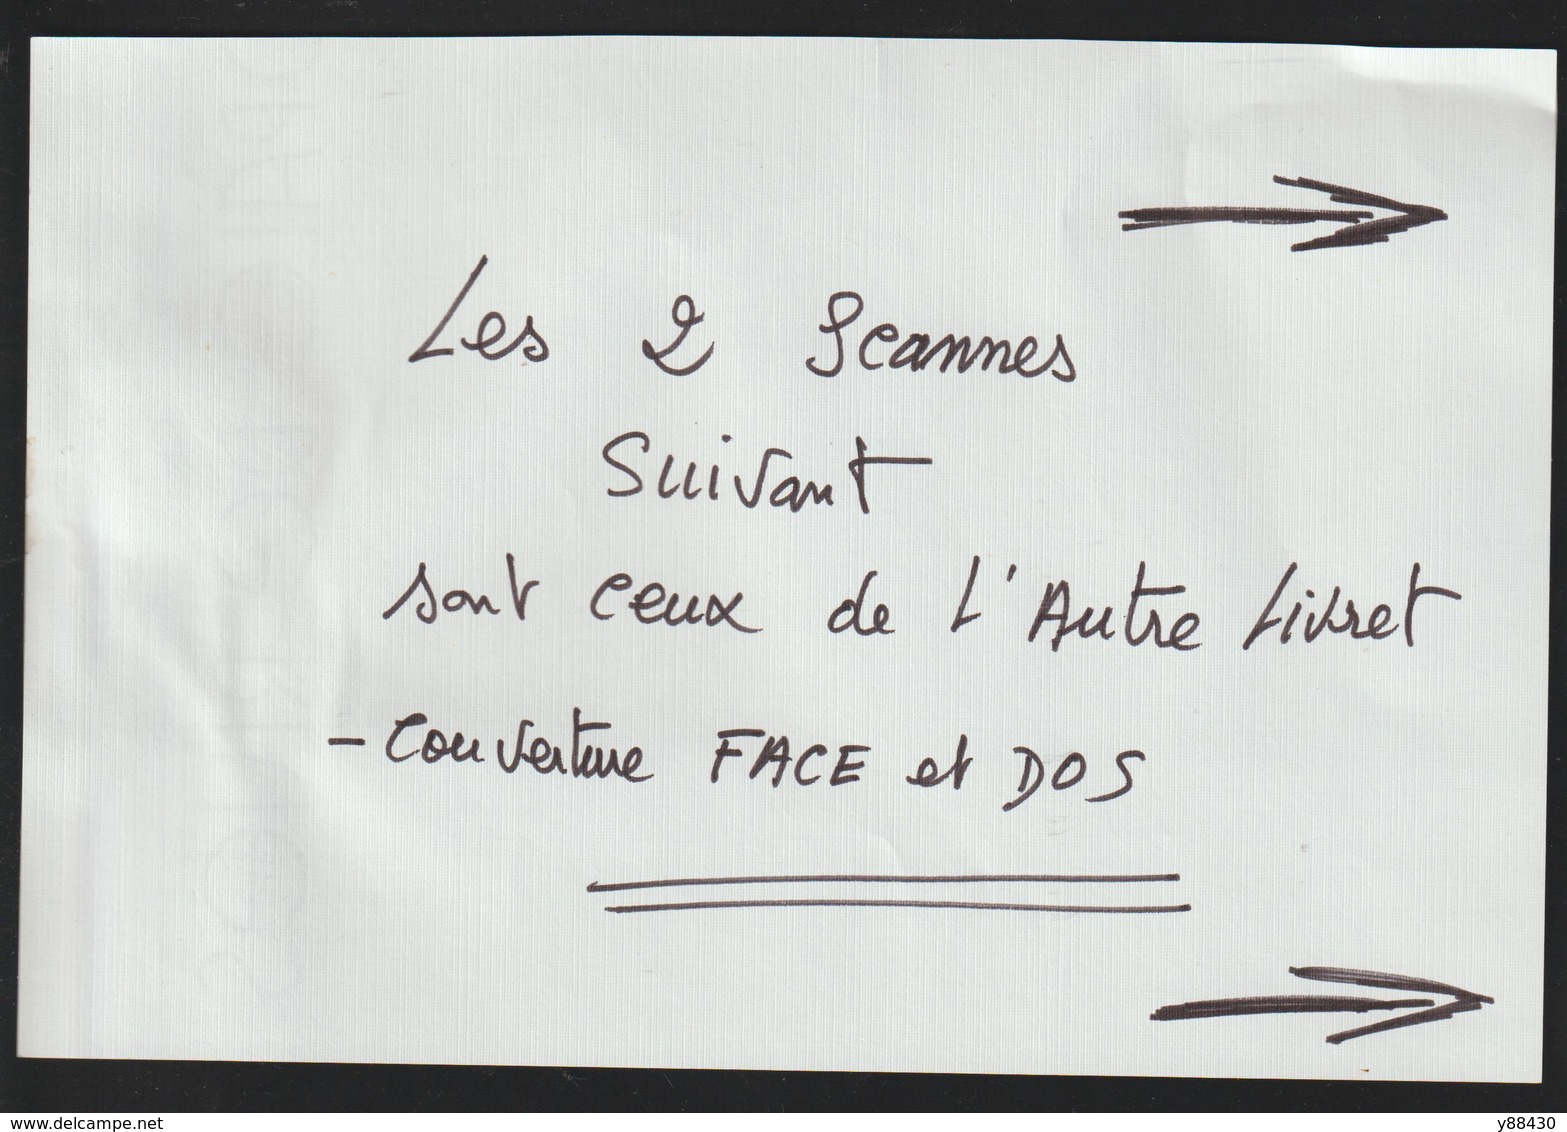 Livret pour FAUCHEUSE PORTEE - Les années 50 - MASSEY HARRIS FERGUSON - Réf..951 007 M 3 -- 24 pages - voir 15 scannes